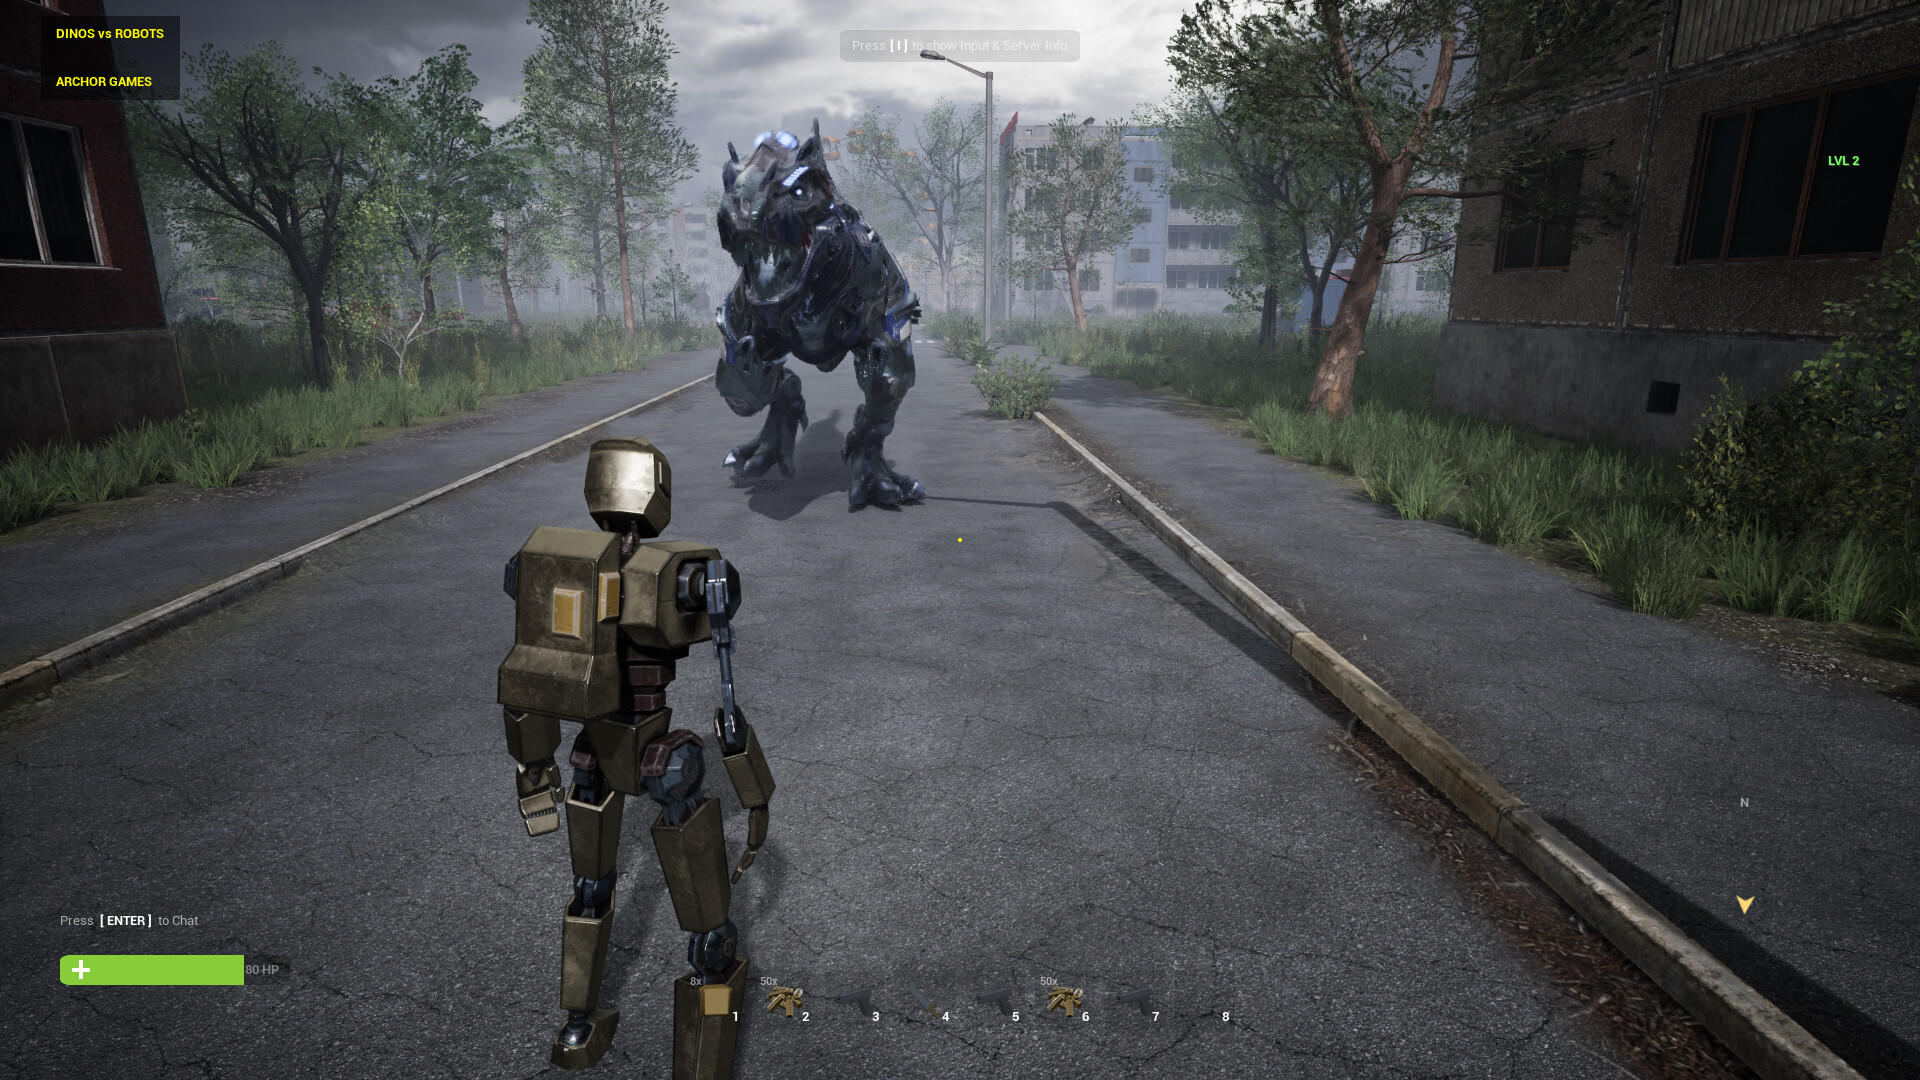 Screenshot 1 of 恐龍與機器人 